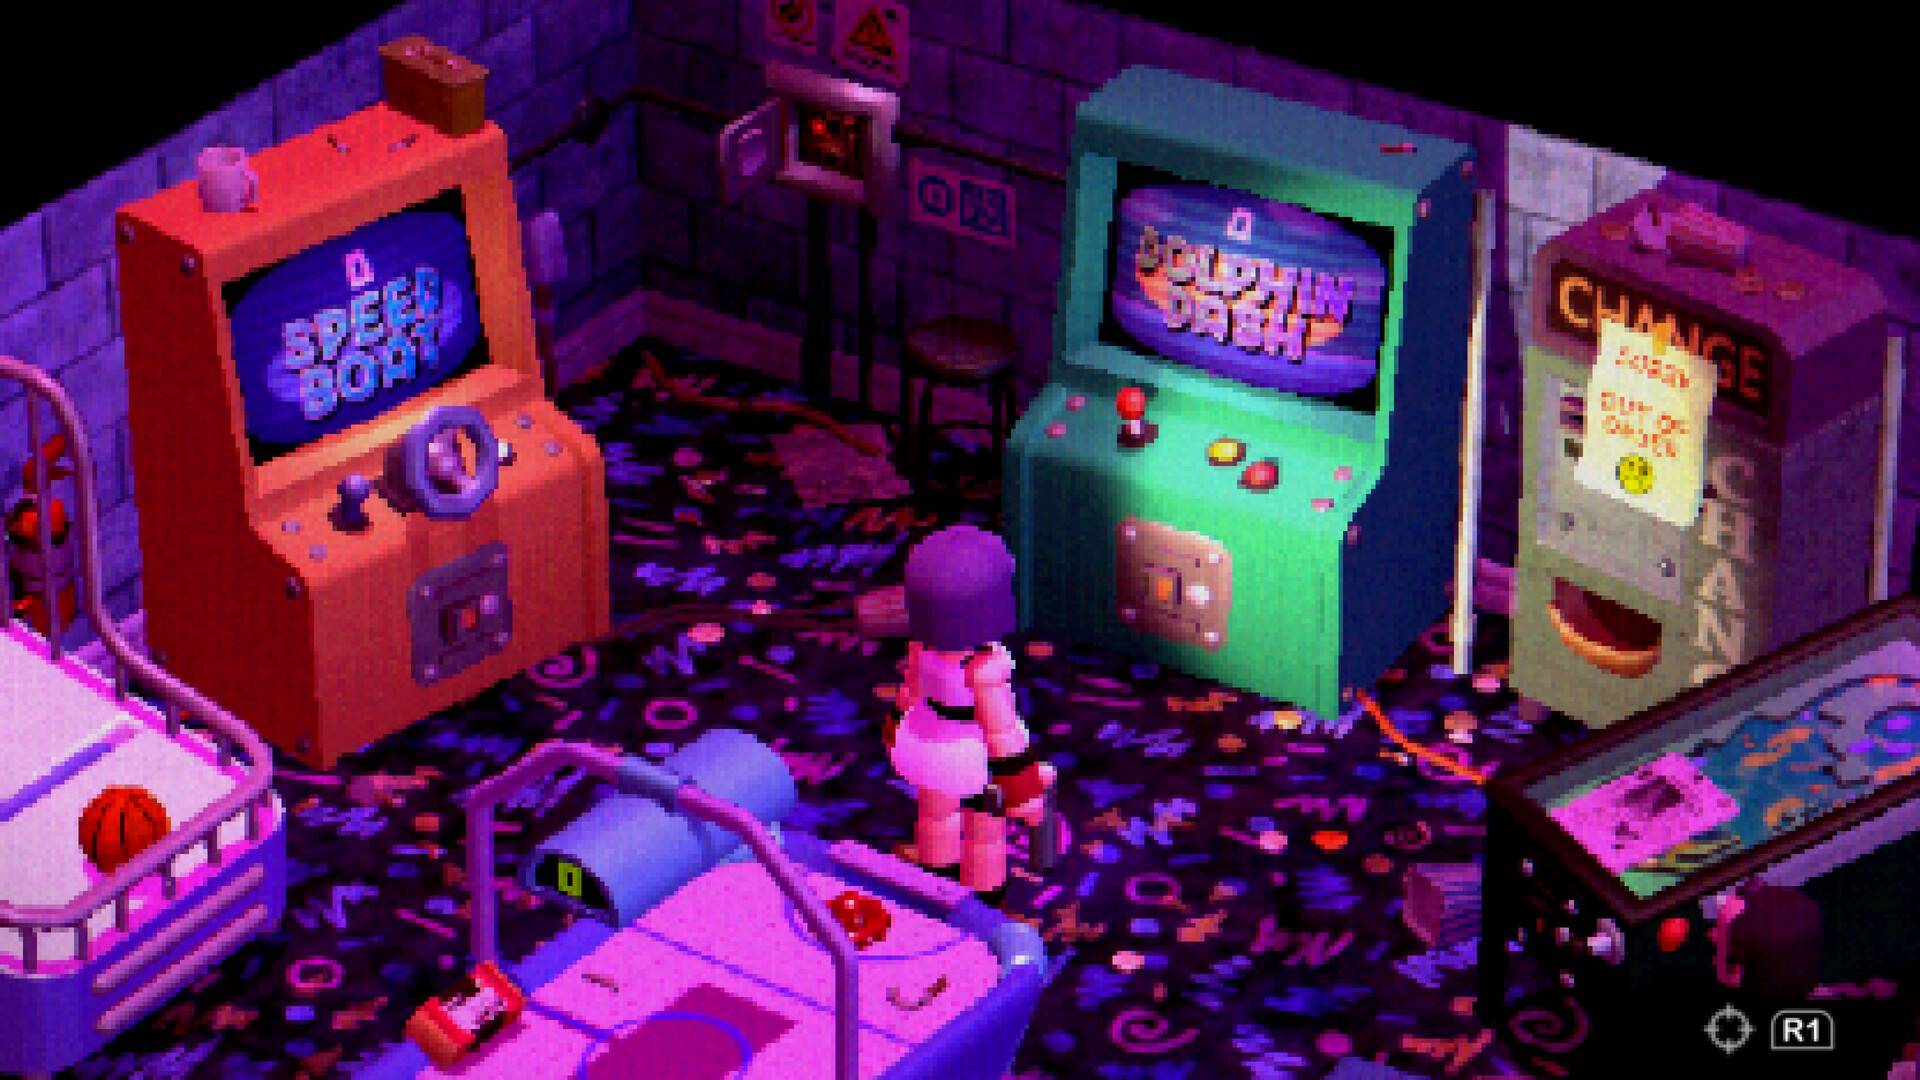 Un personnage en blocs se tient dans une arcade colorée